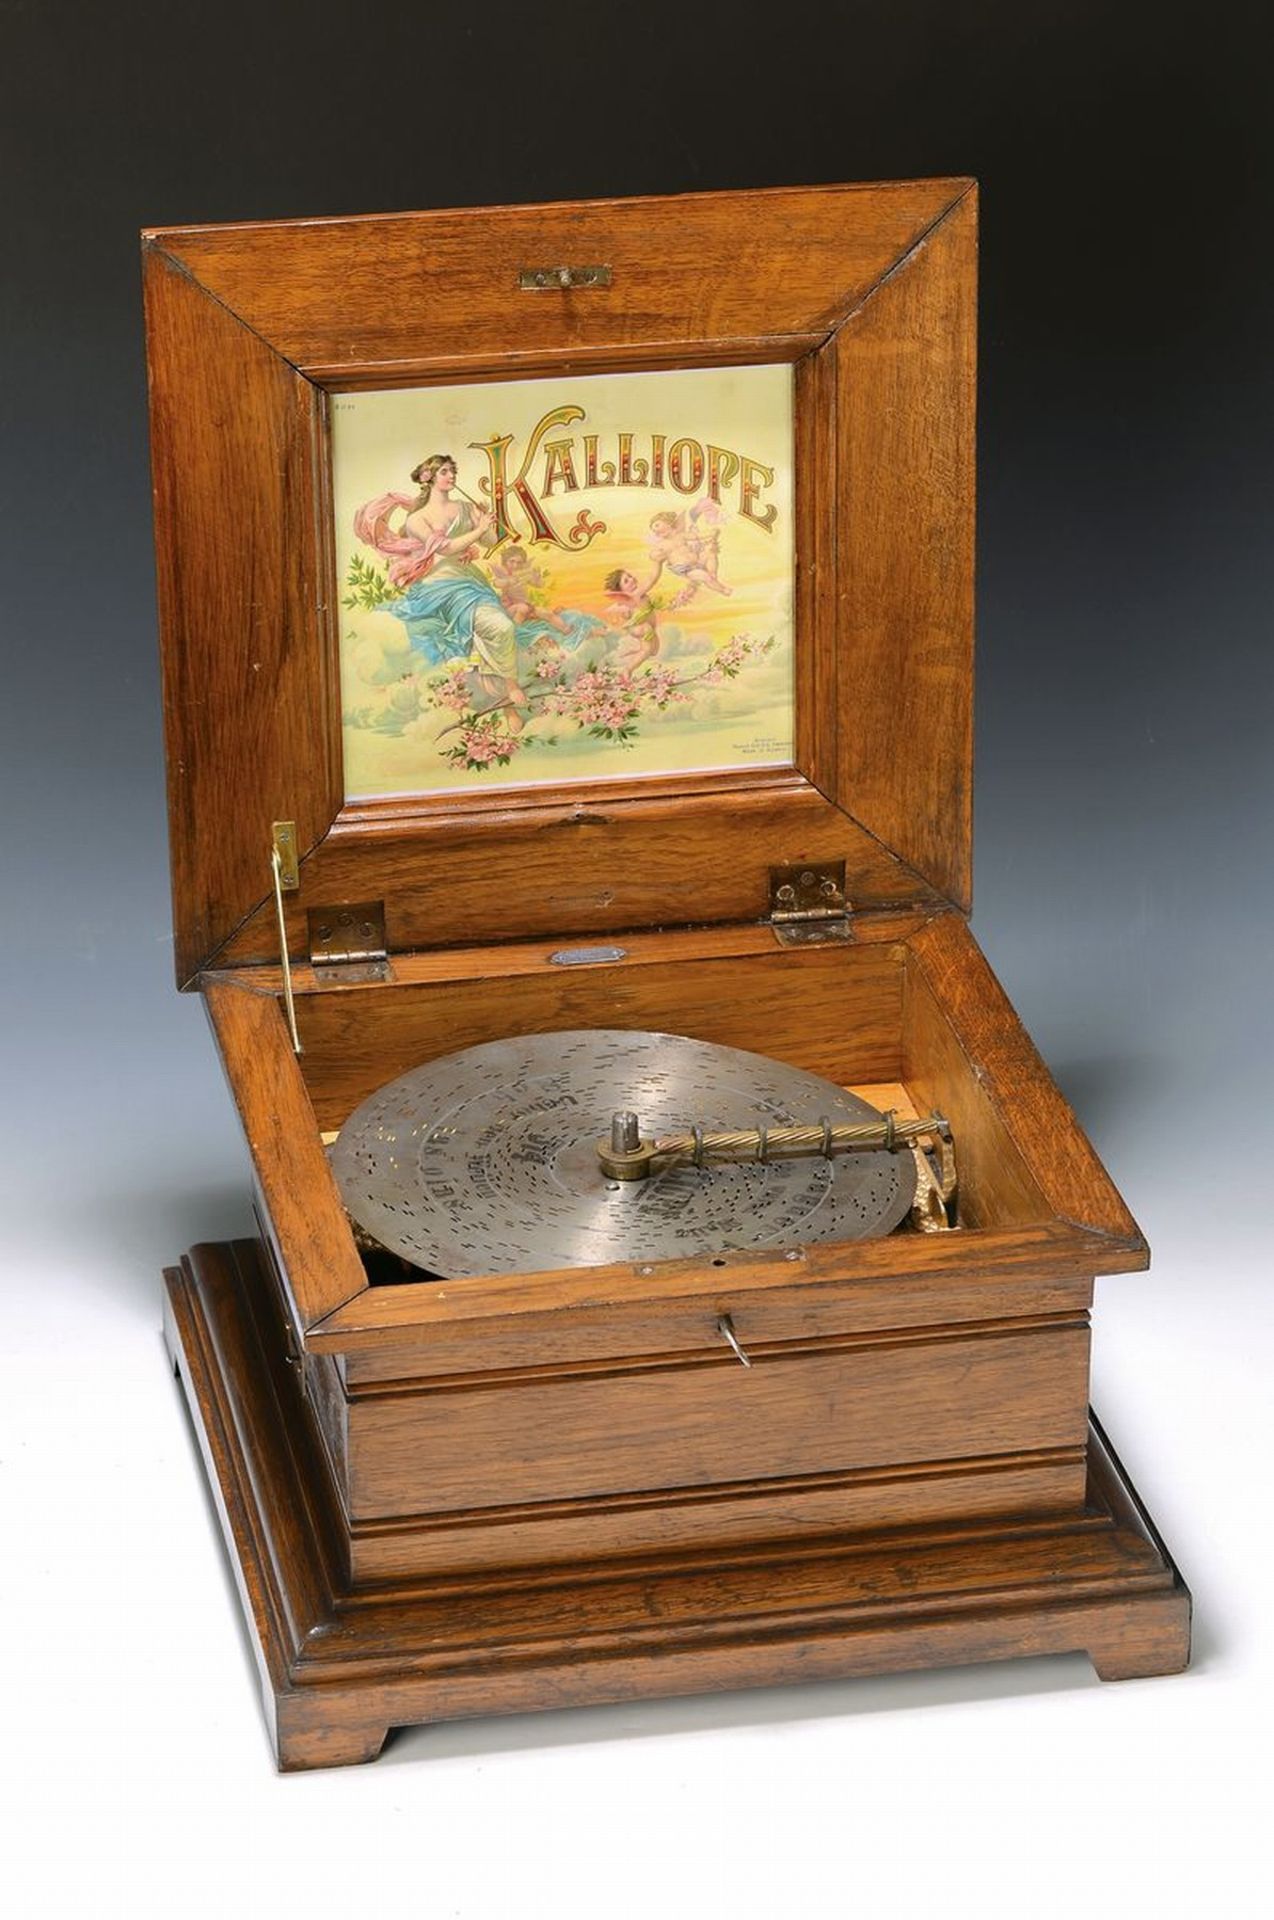 Spieluhr mit Glockenspiel, Kalliope, um 1900,  Gehäuse